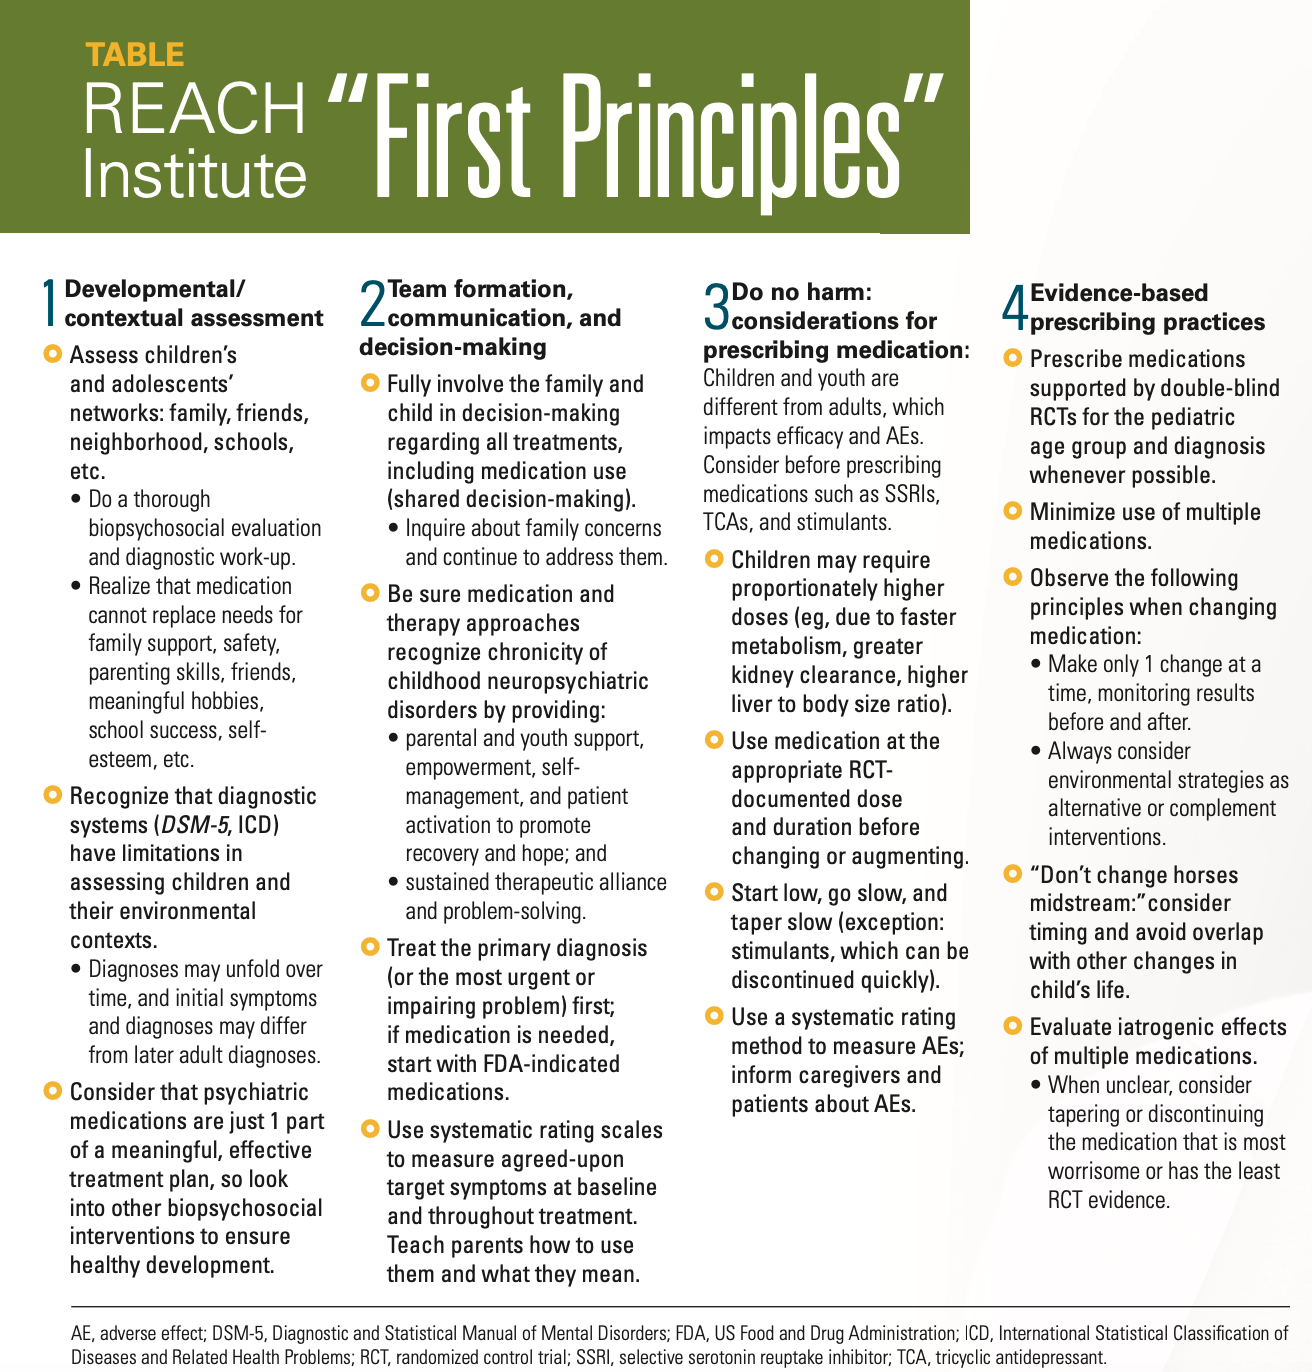 REACH Institute "First Principles"